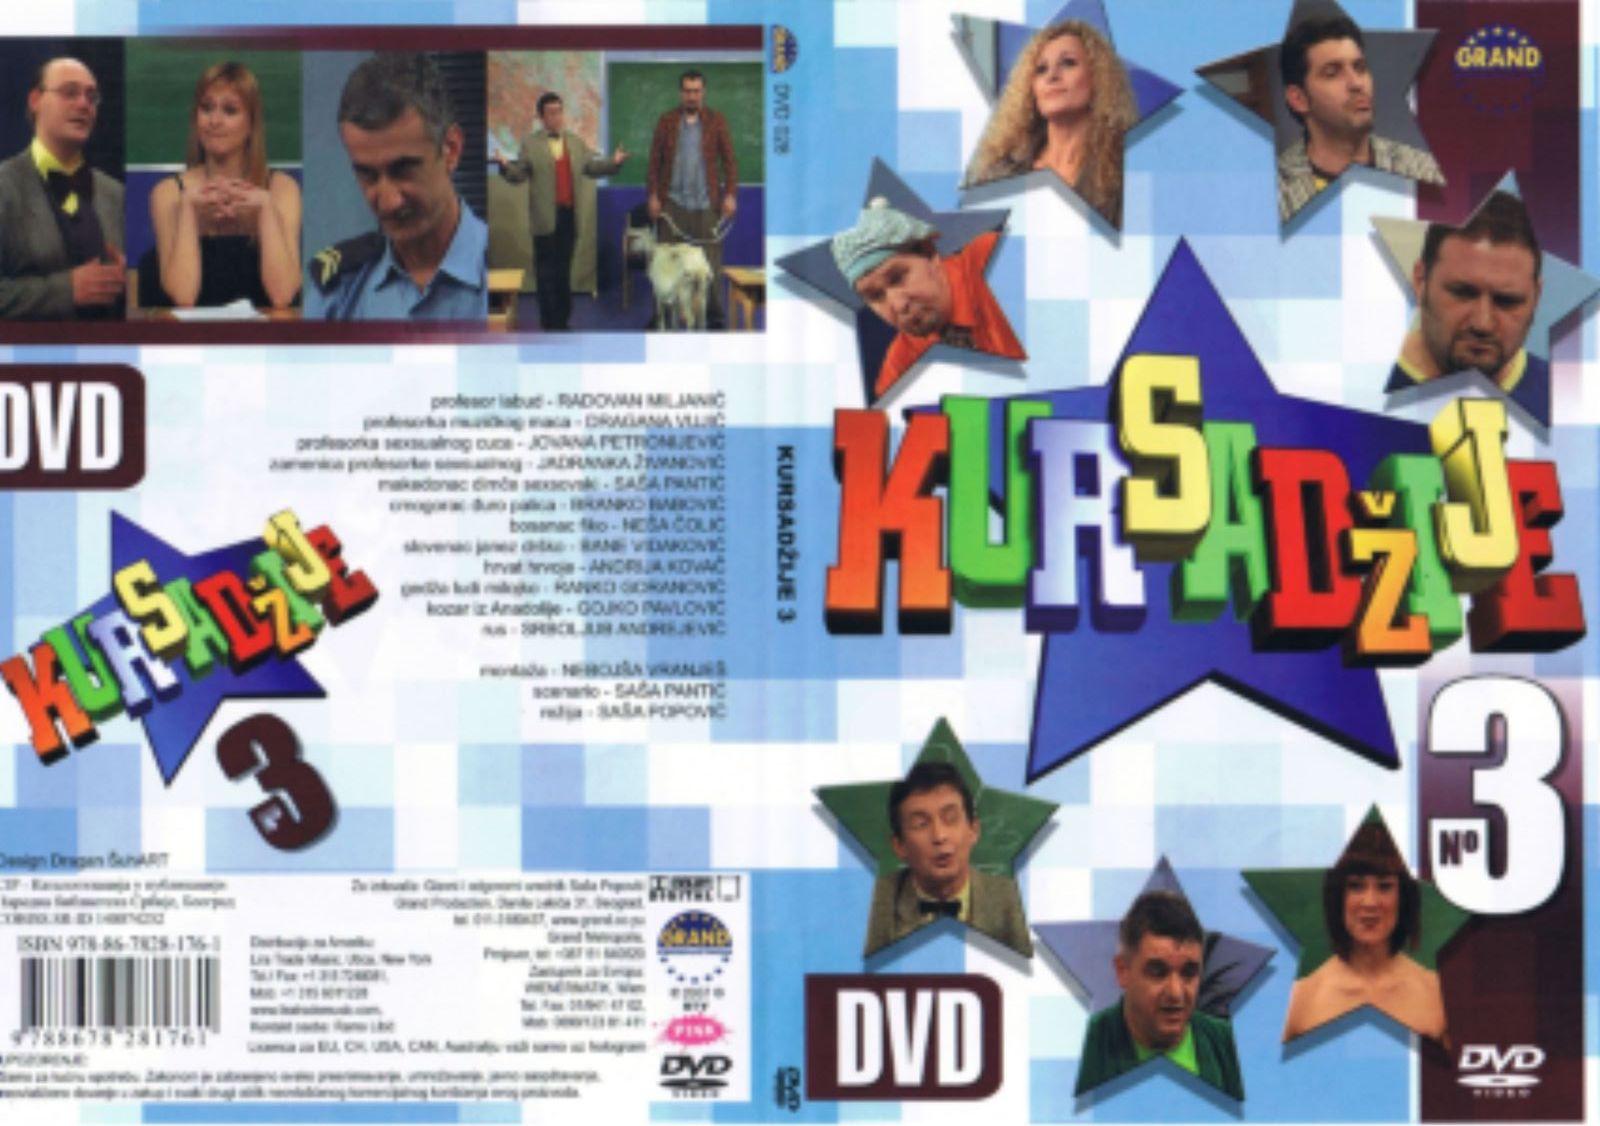 Click to view full size image -  DVD Cover - 0-9 - DVD - KURSADZIJE 3 - DVD - KURSADZIJE 3.jpg